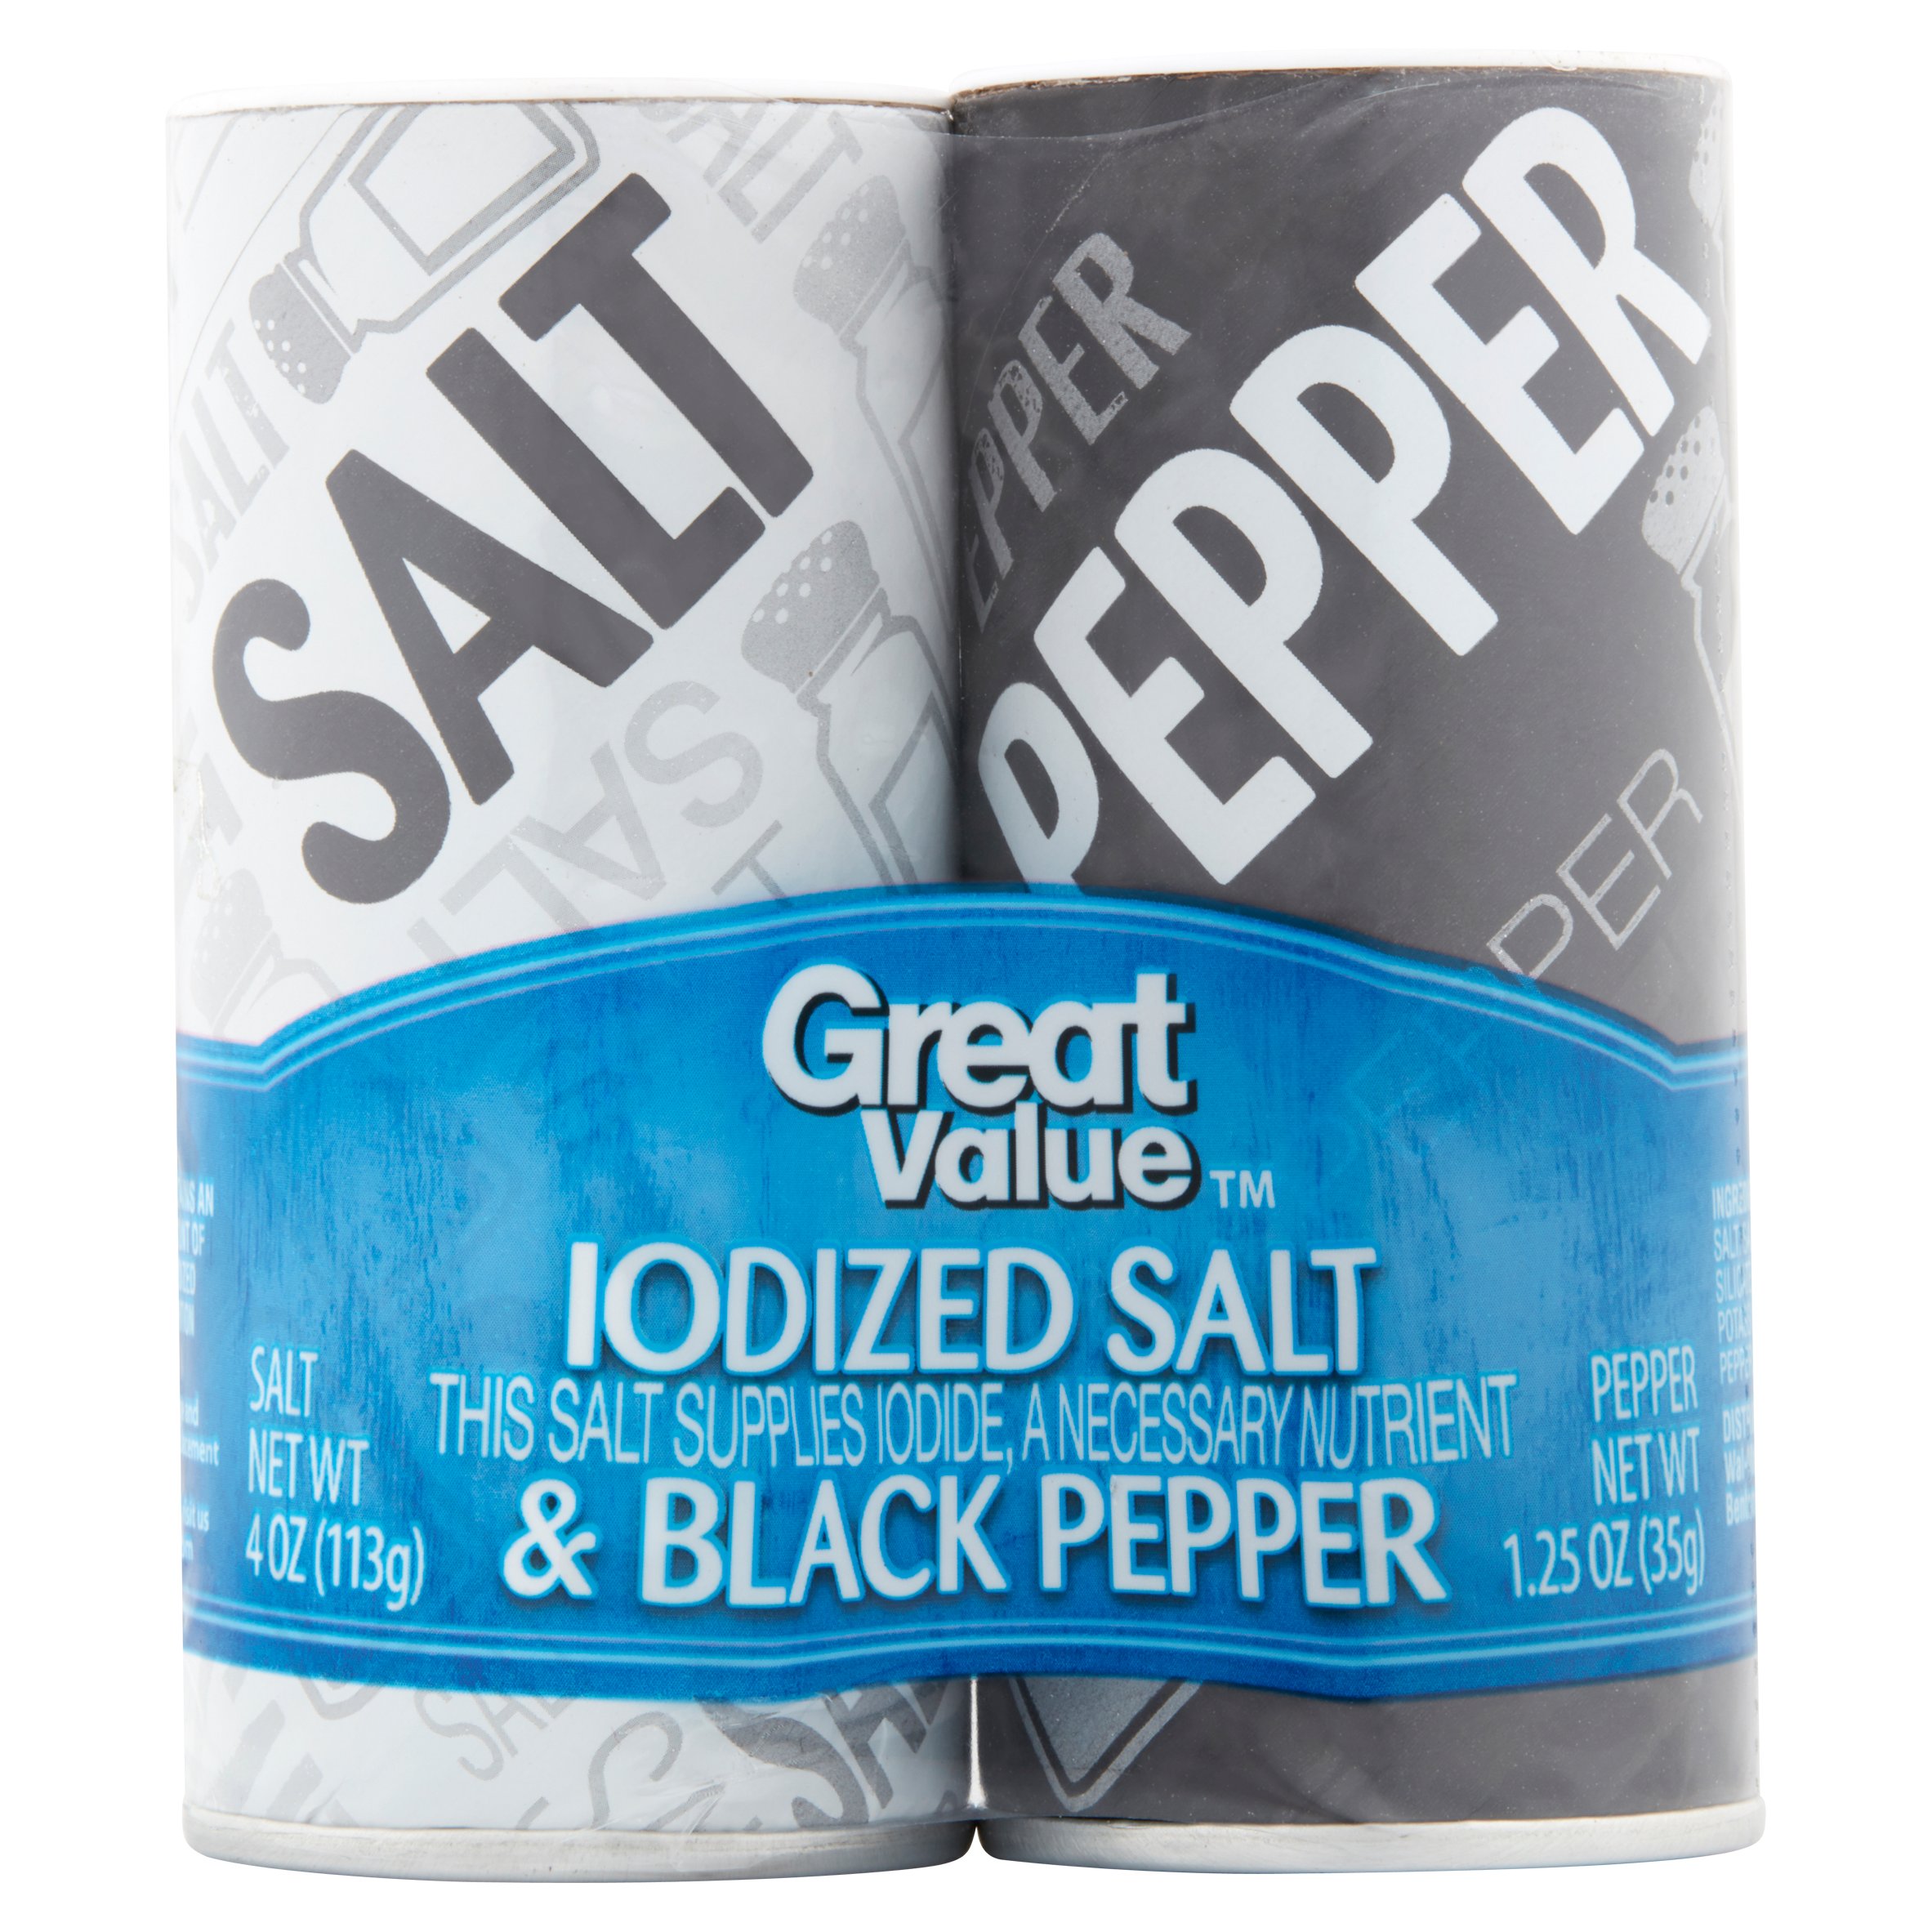 Great Value Iodized Salt & Black Pepper, 2 Pack Image